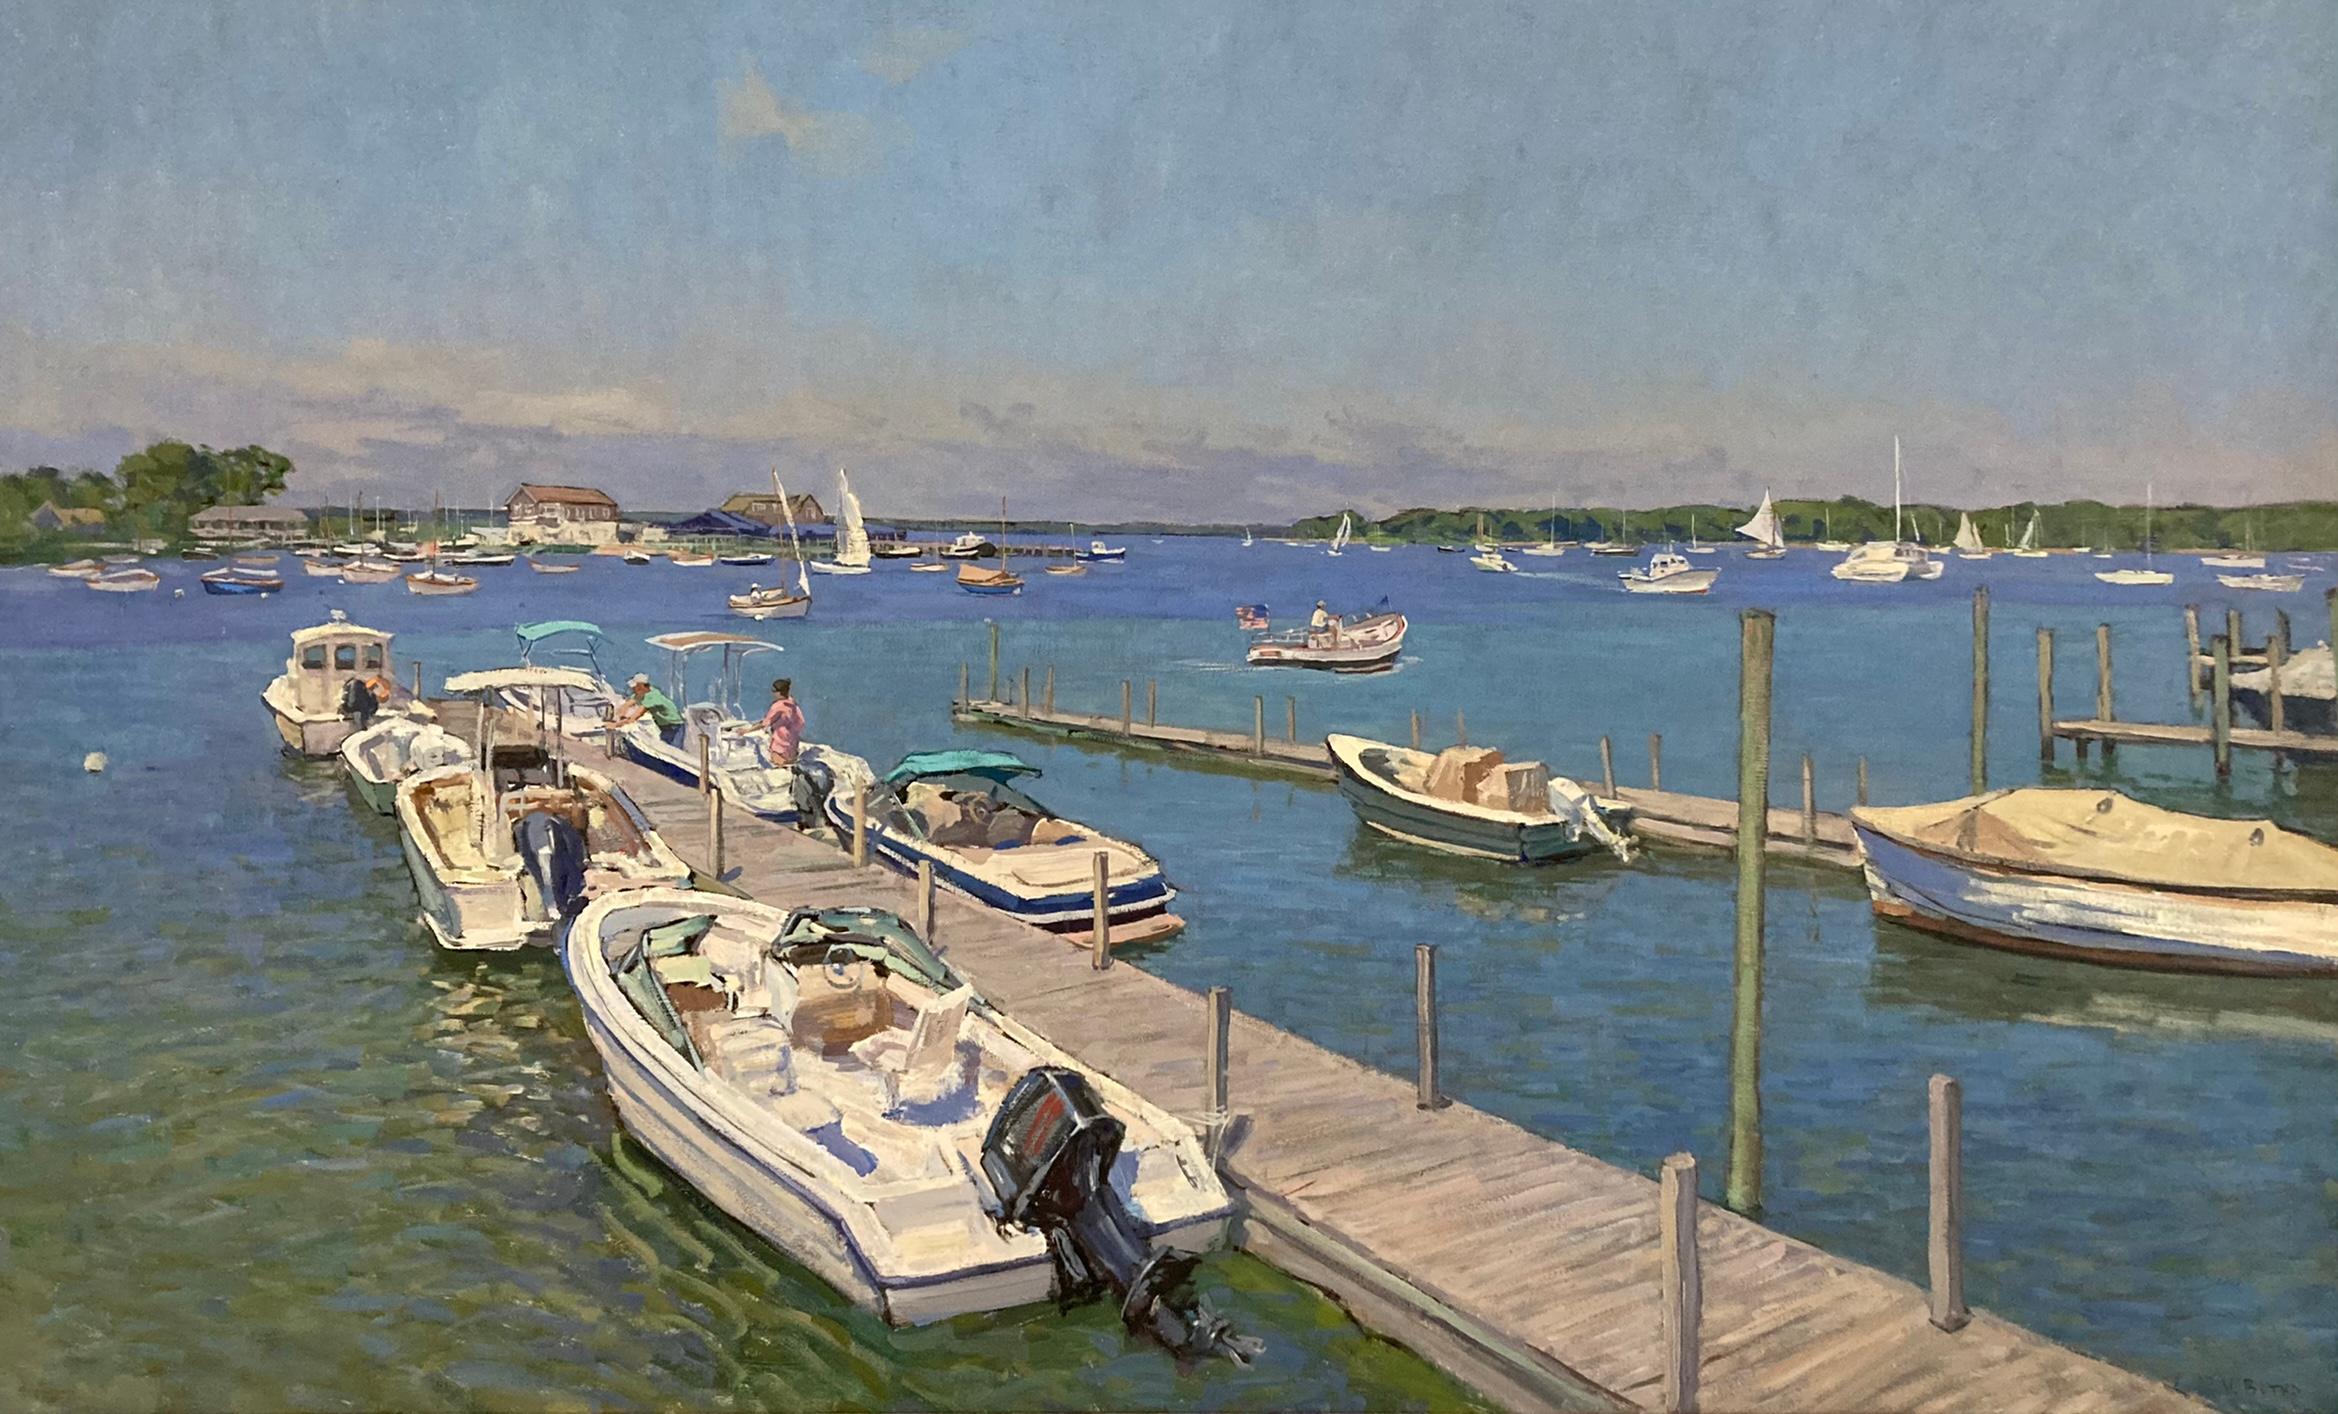 Still-Life Painting Viktor Butko - "Sunny Day at Dering Harbor" peinture contemporaine en plein air de bateaux sur un quai. 